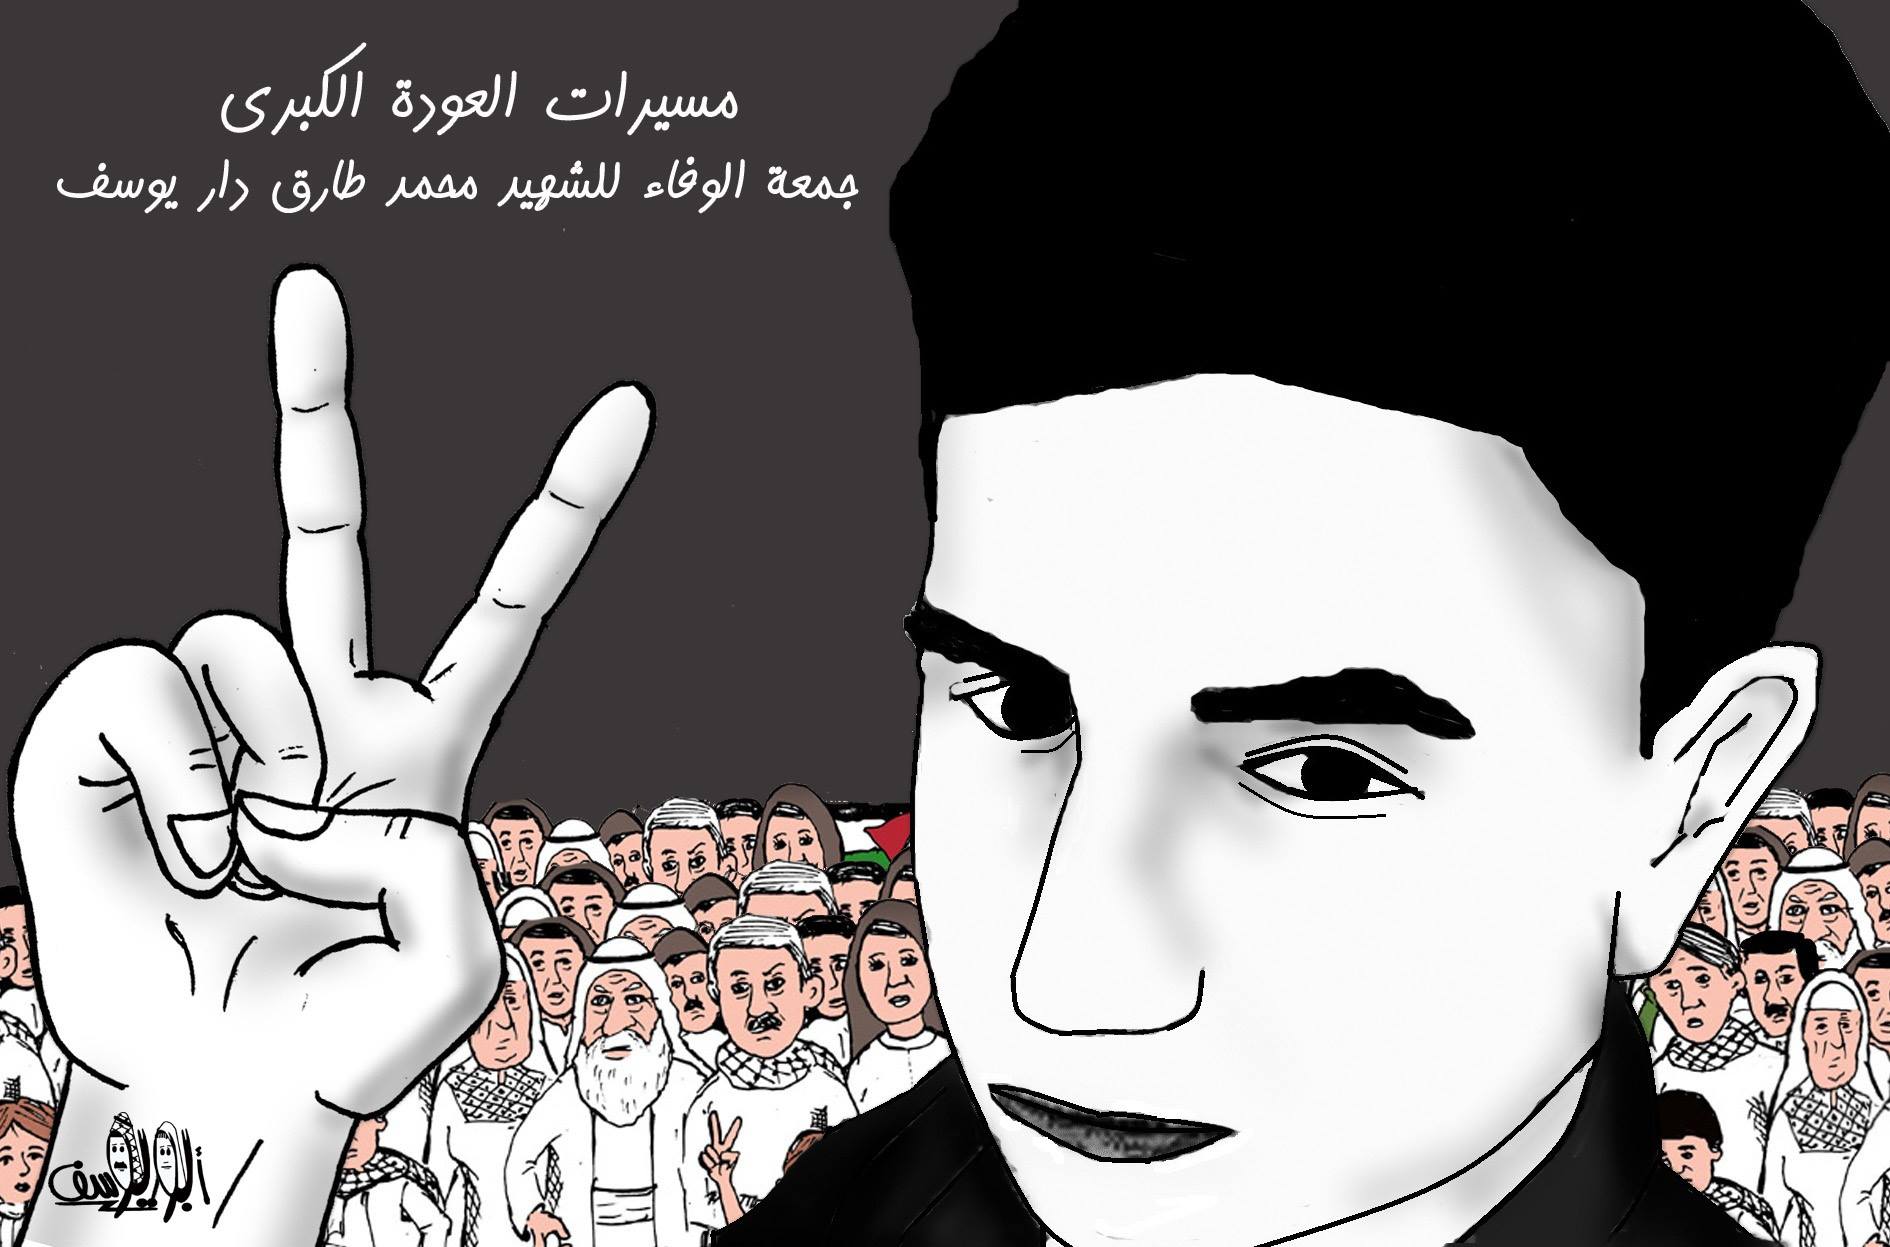 کاریکاتور روزشهیدی با پشتوانه ملت فلسطین 2